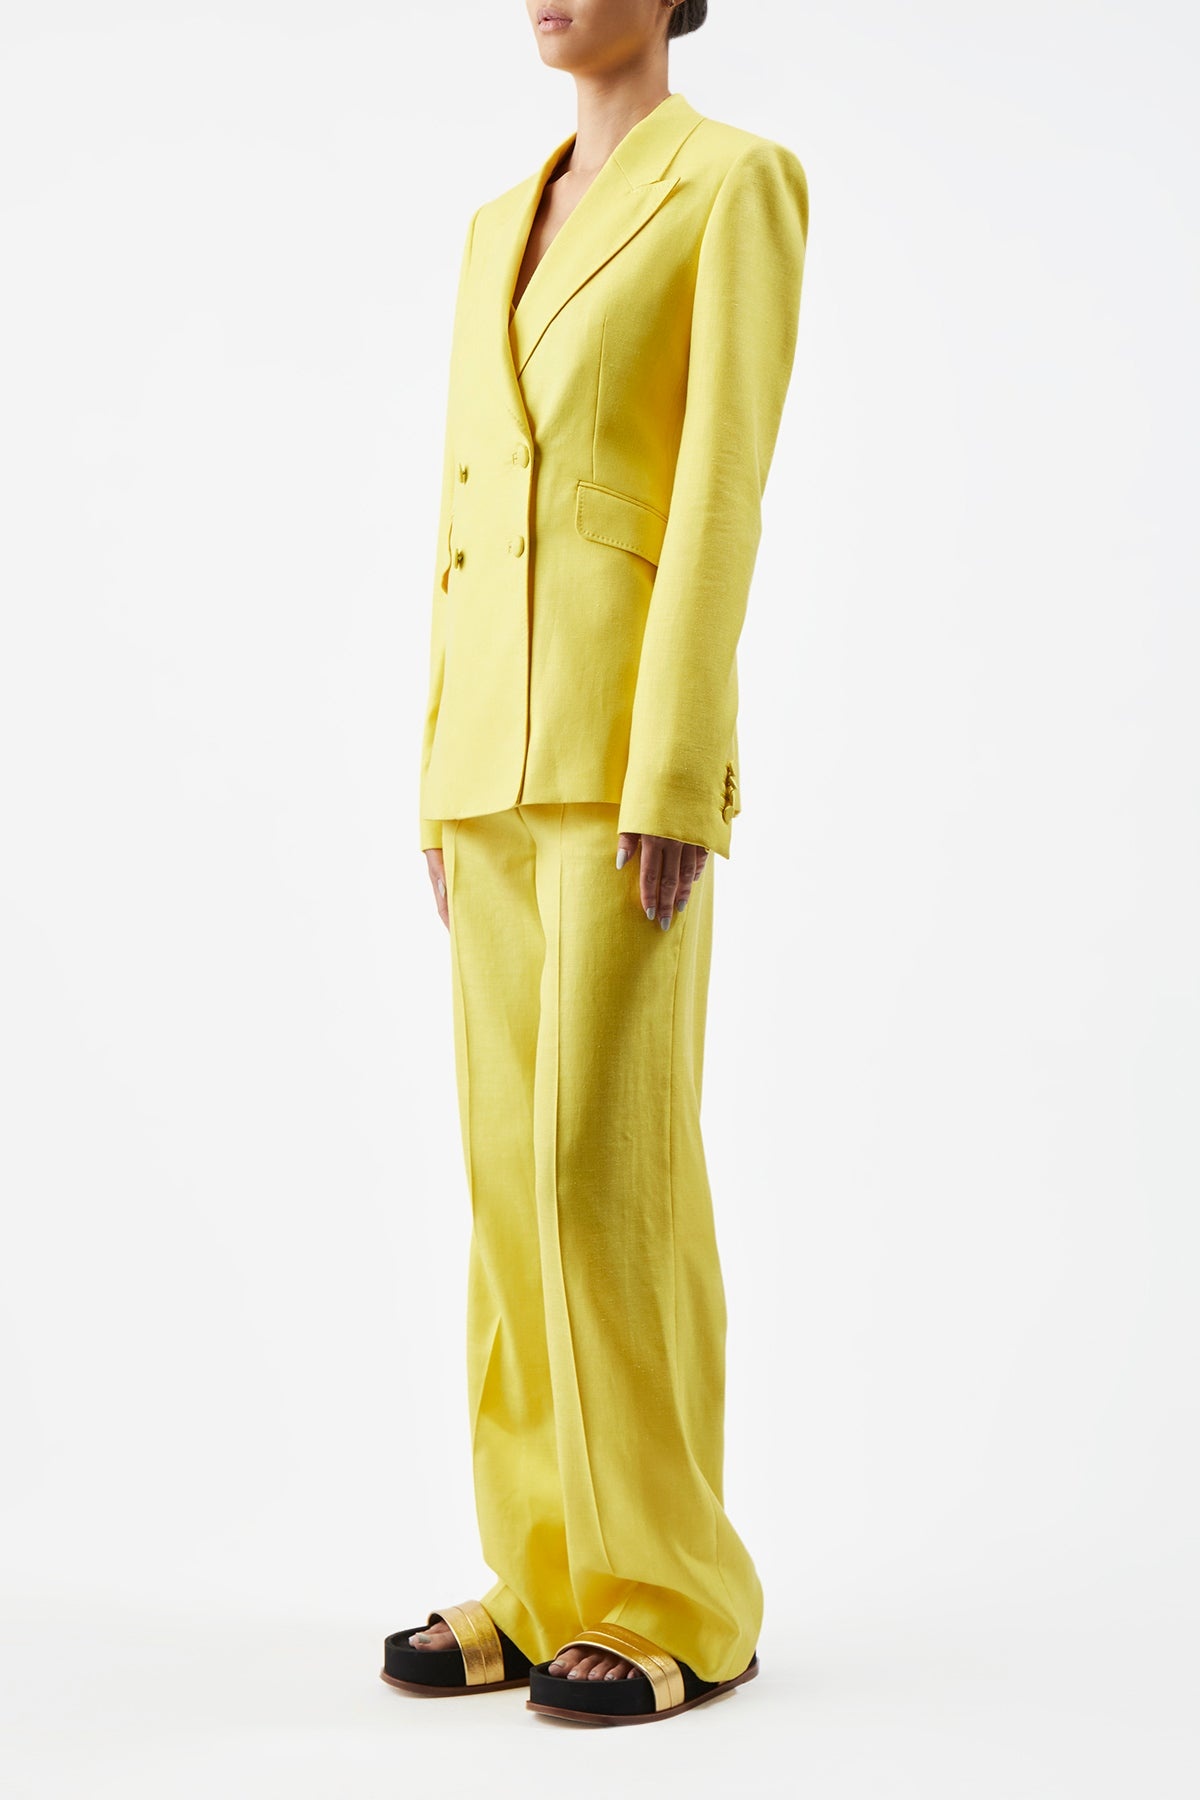 Vesta Pant in Cadmium Yellow Silk Wool with Linen - 4